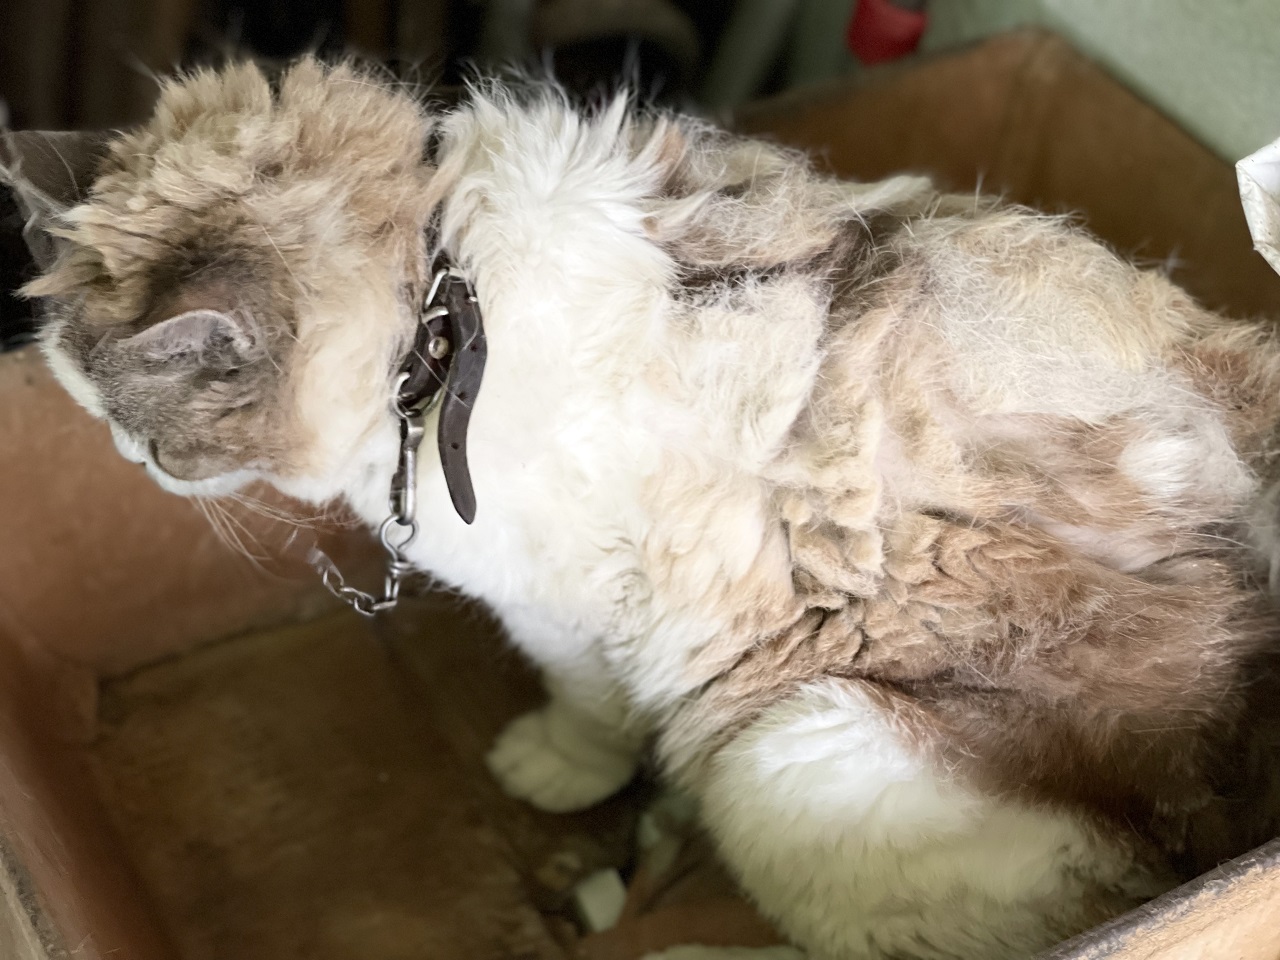 L’Oipa di Pordenone sequestra un gatto trovato legato ad una catena